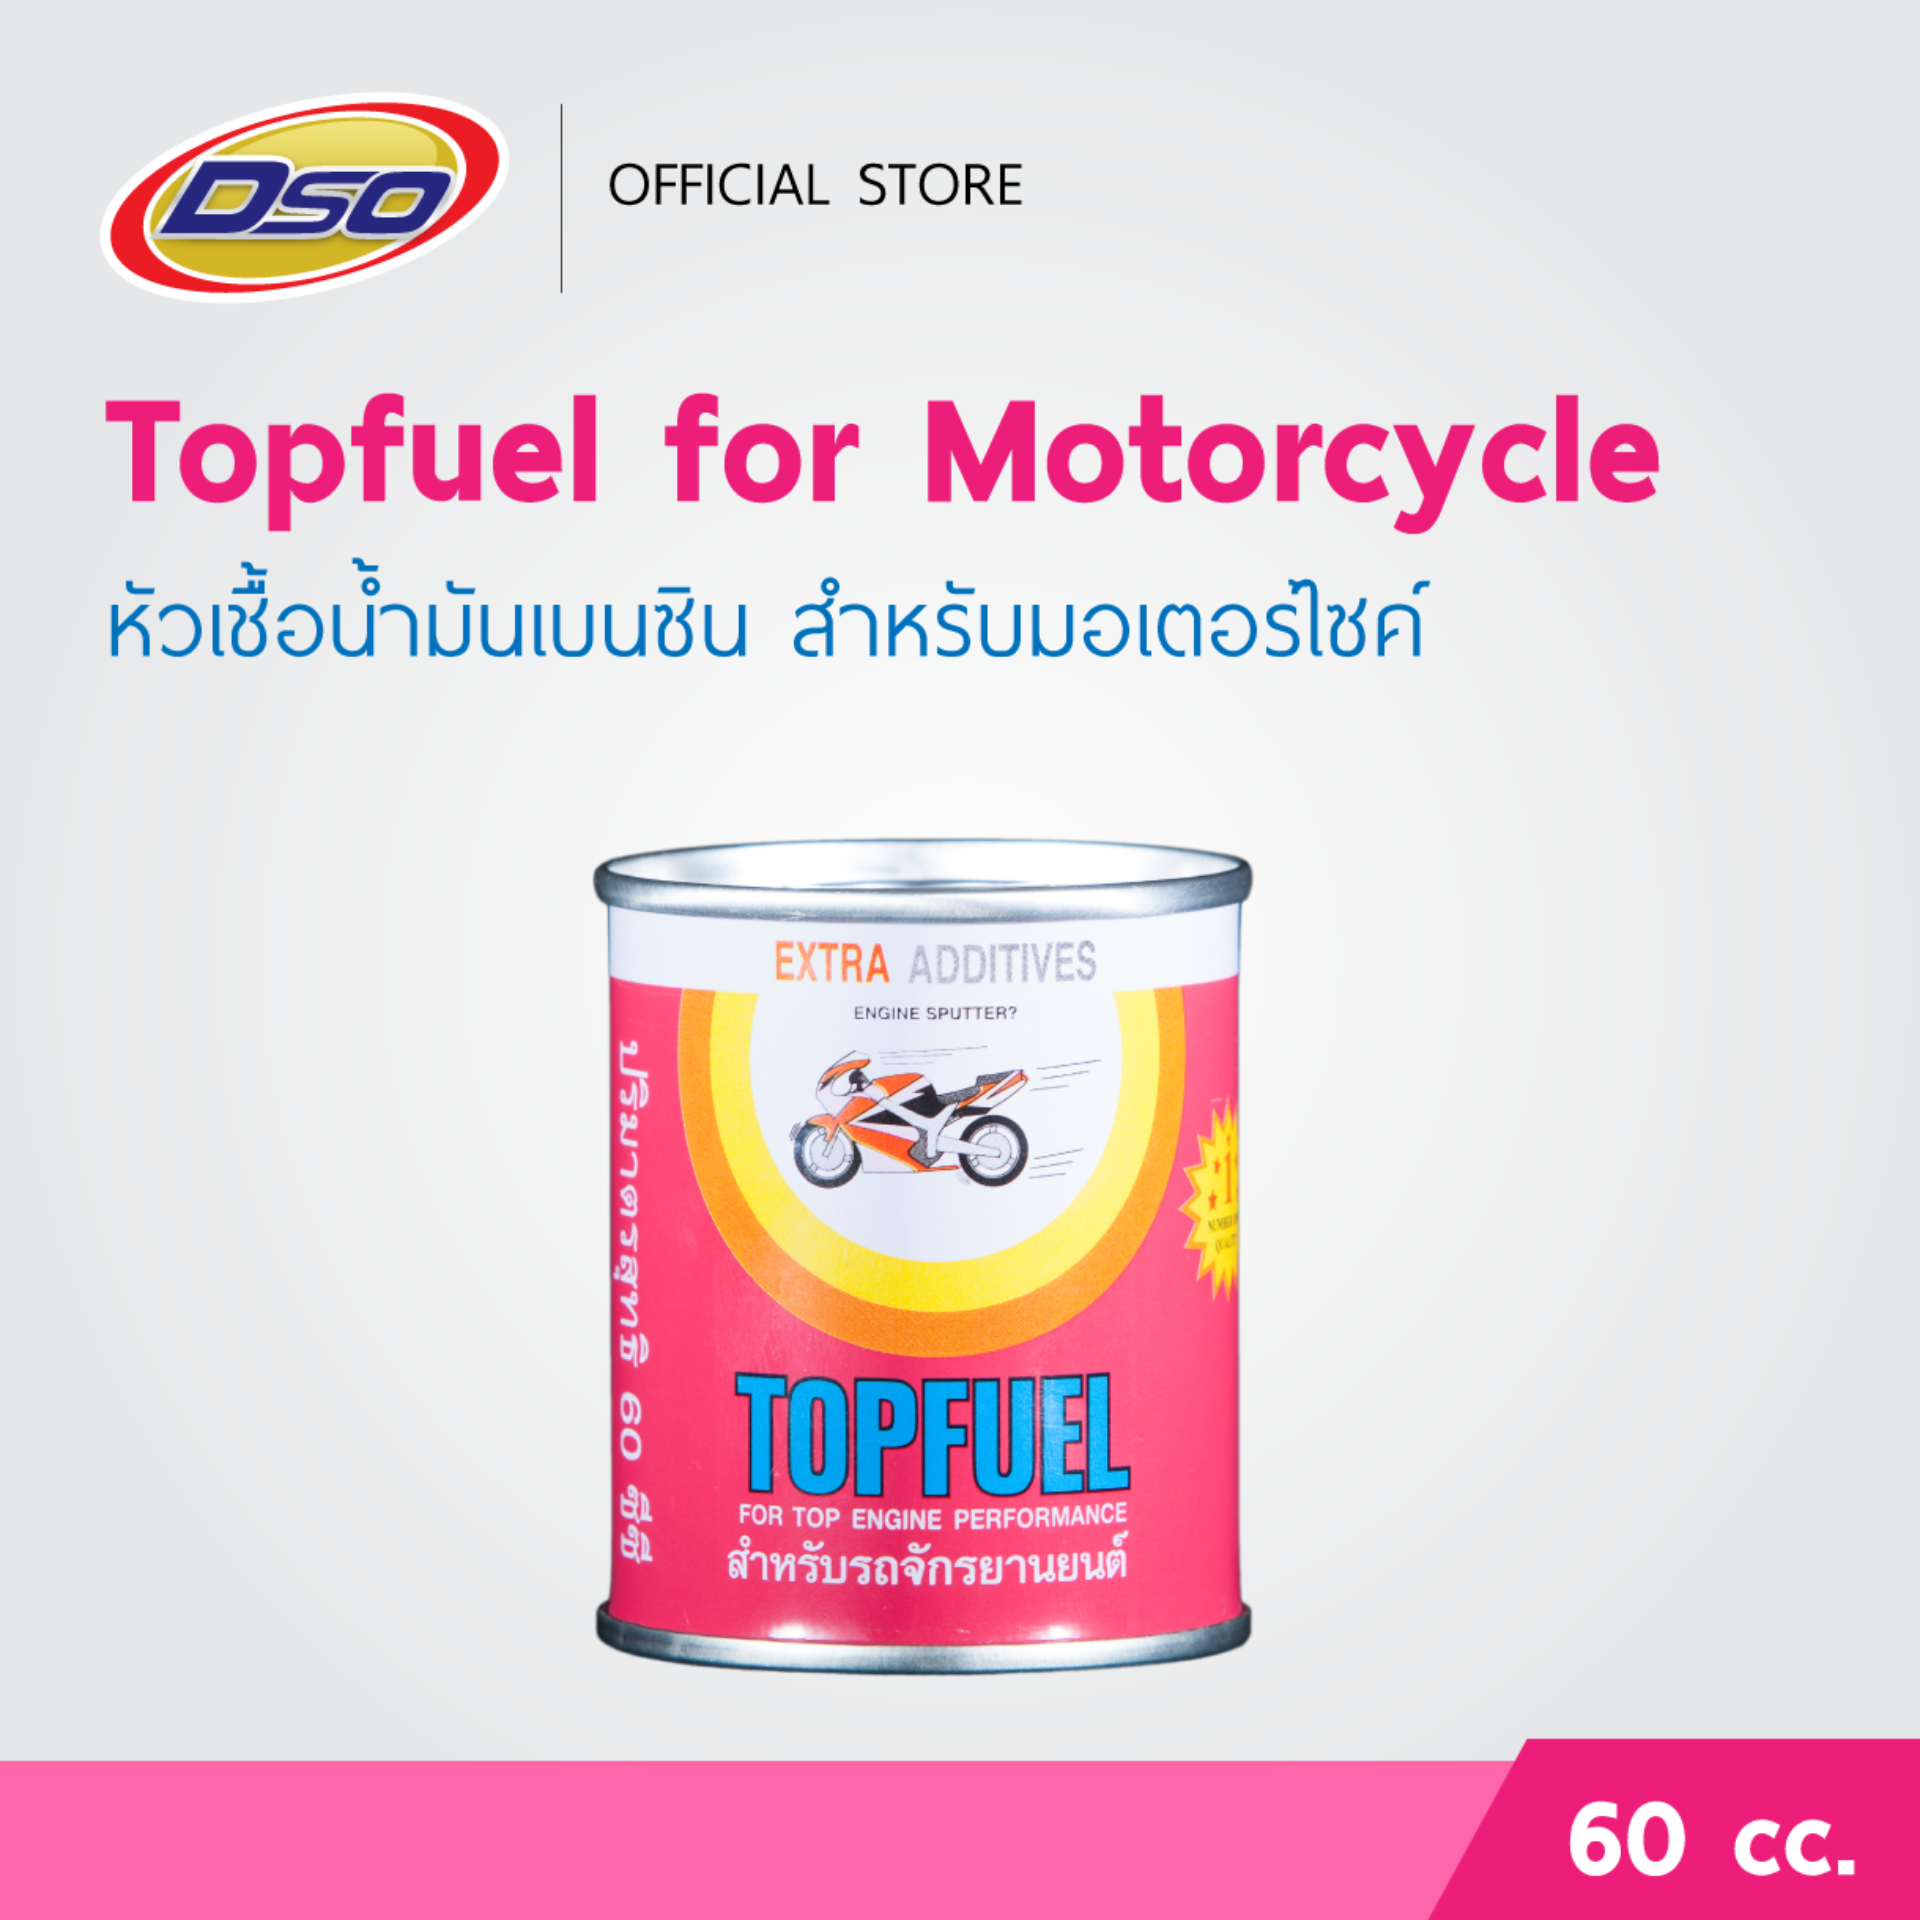 ดีโซ่ หัวเชื้อน้ำมันเบนซิน สำหรับมอเตอร์ไซค์ Topfuel for Motorcycle 60cc.